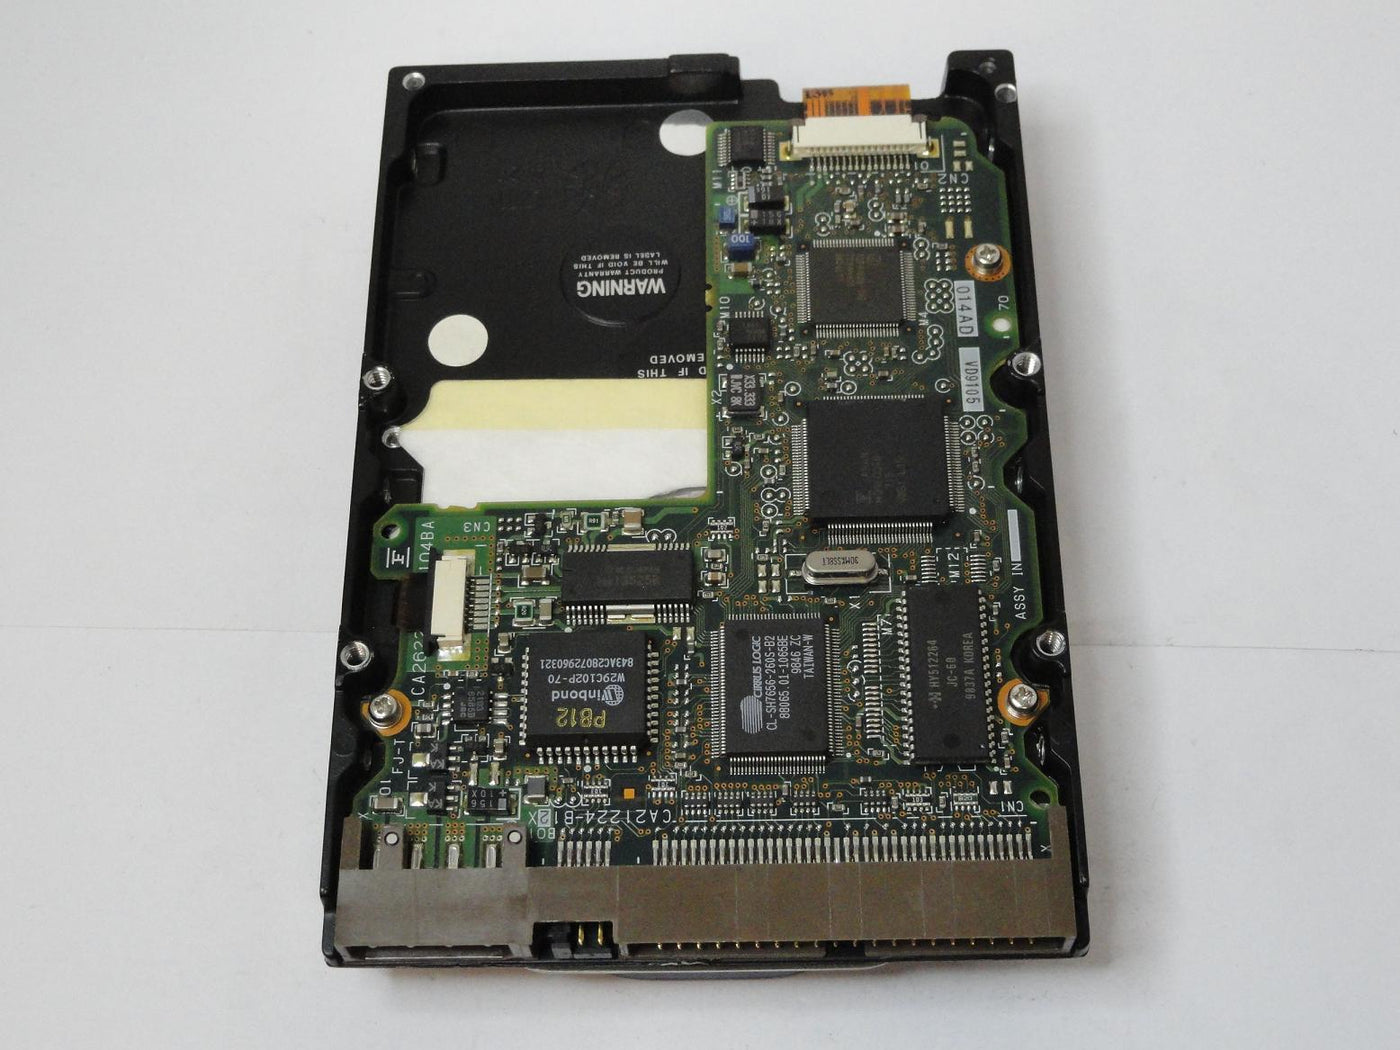 MC4352_CA01675-B341000E_Fujitsu 6.4GB IDE 5400rpm 3.5in HDD - Image2